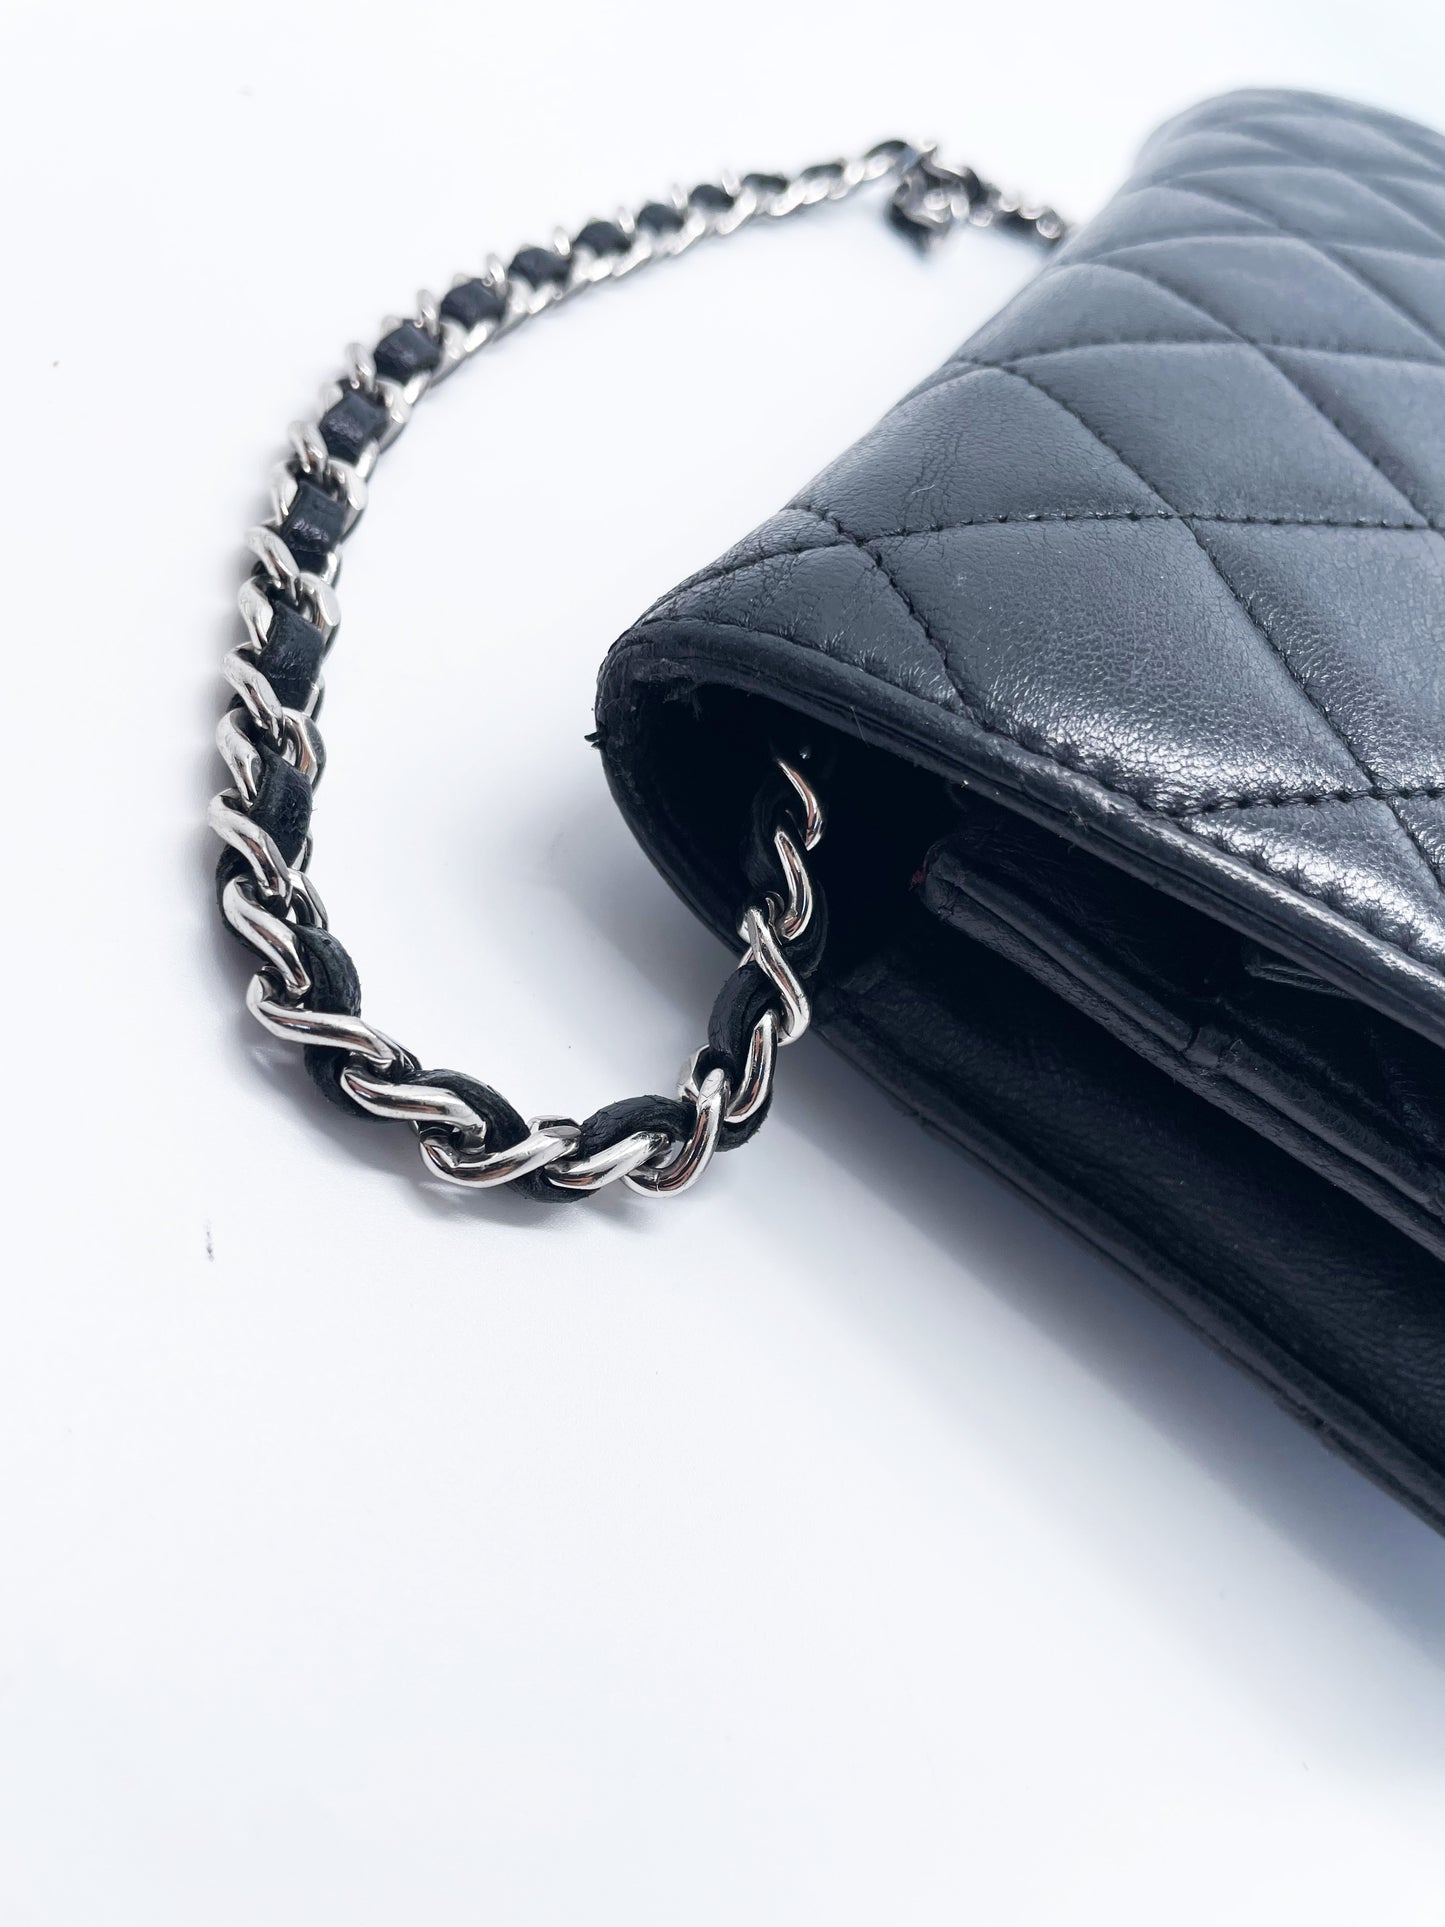 Sac Chanel bandoulière wallet on chain (woc) en cuir noir